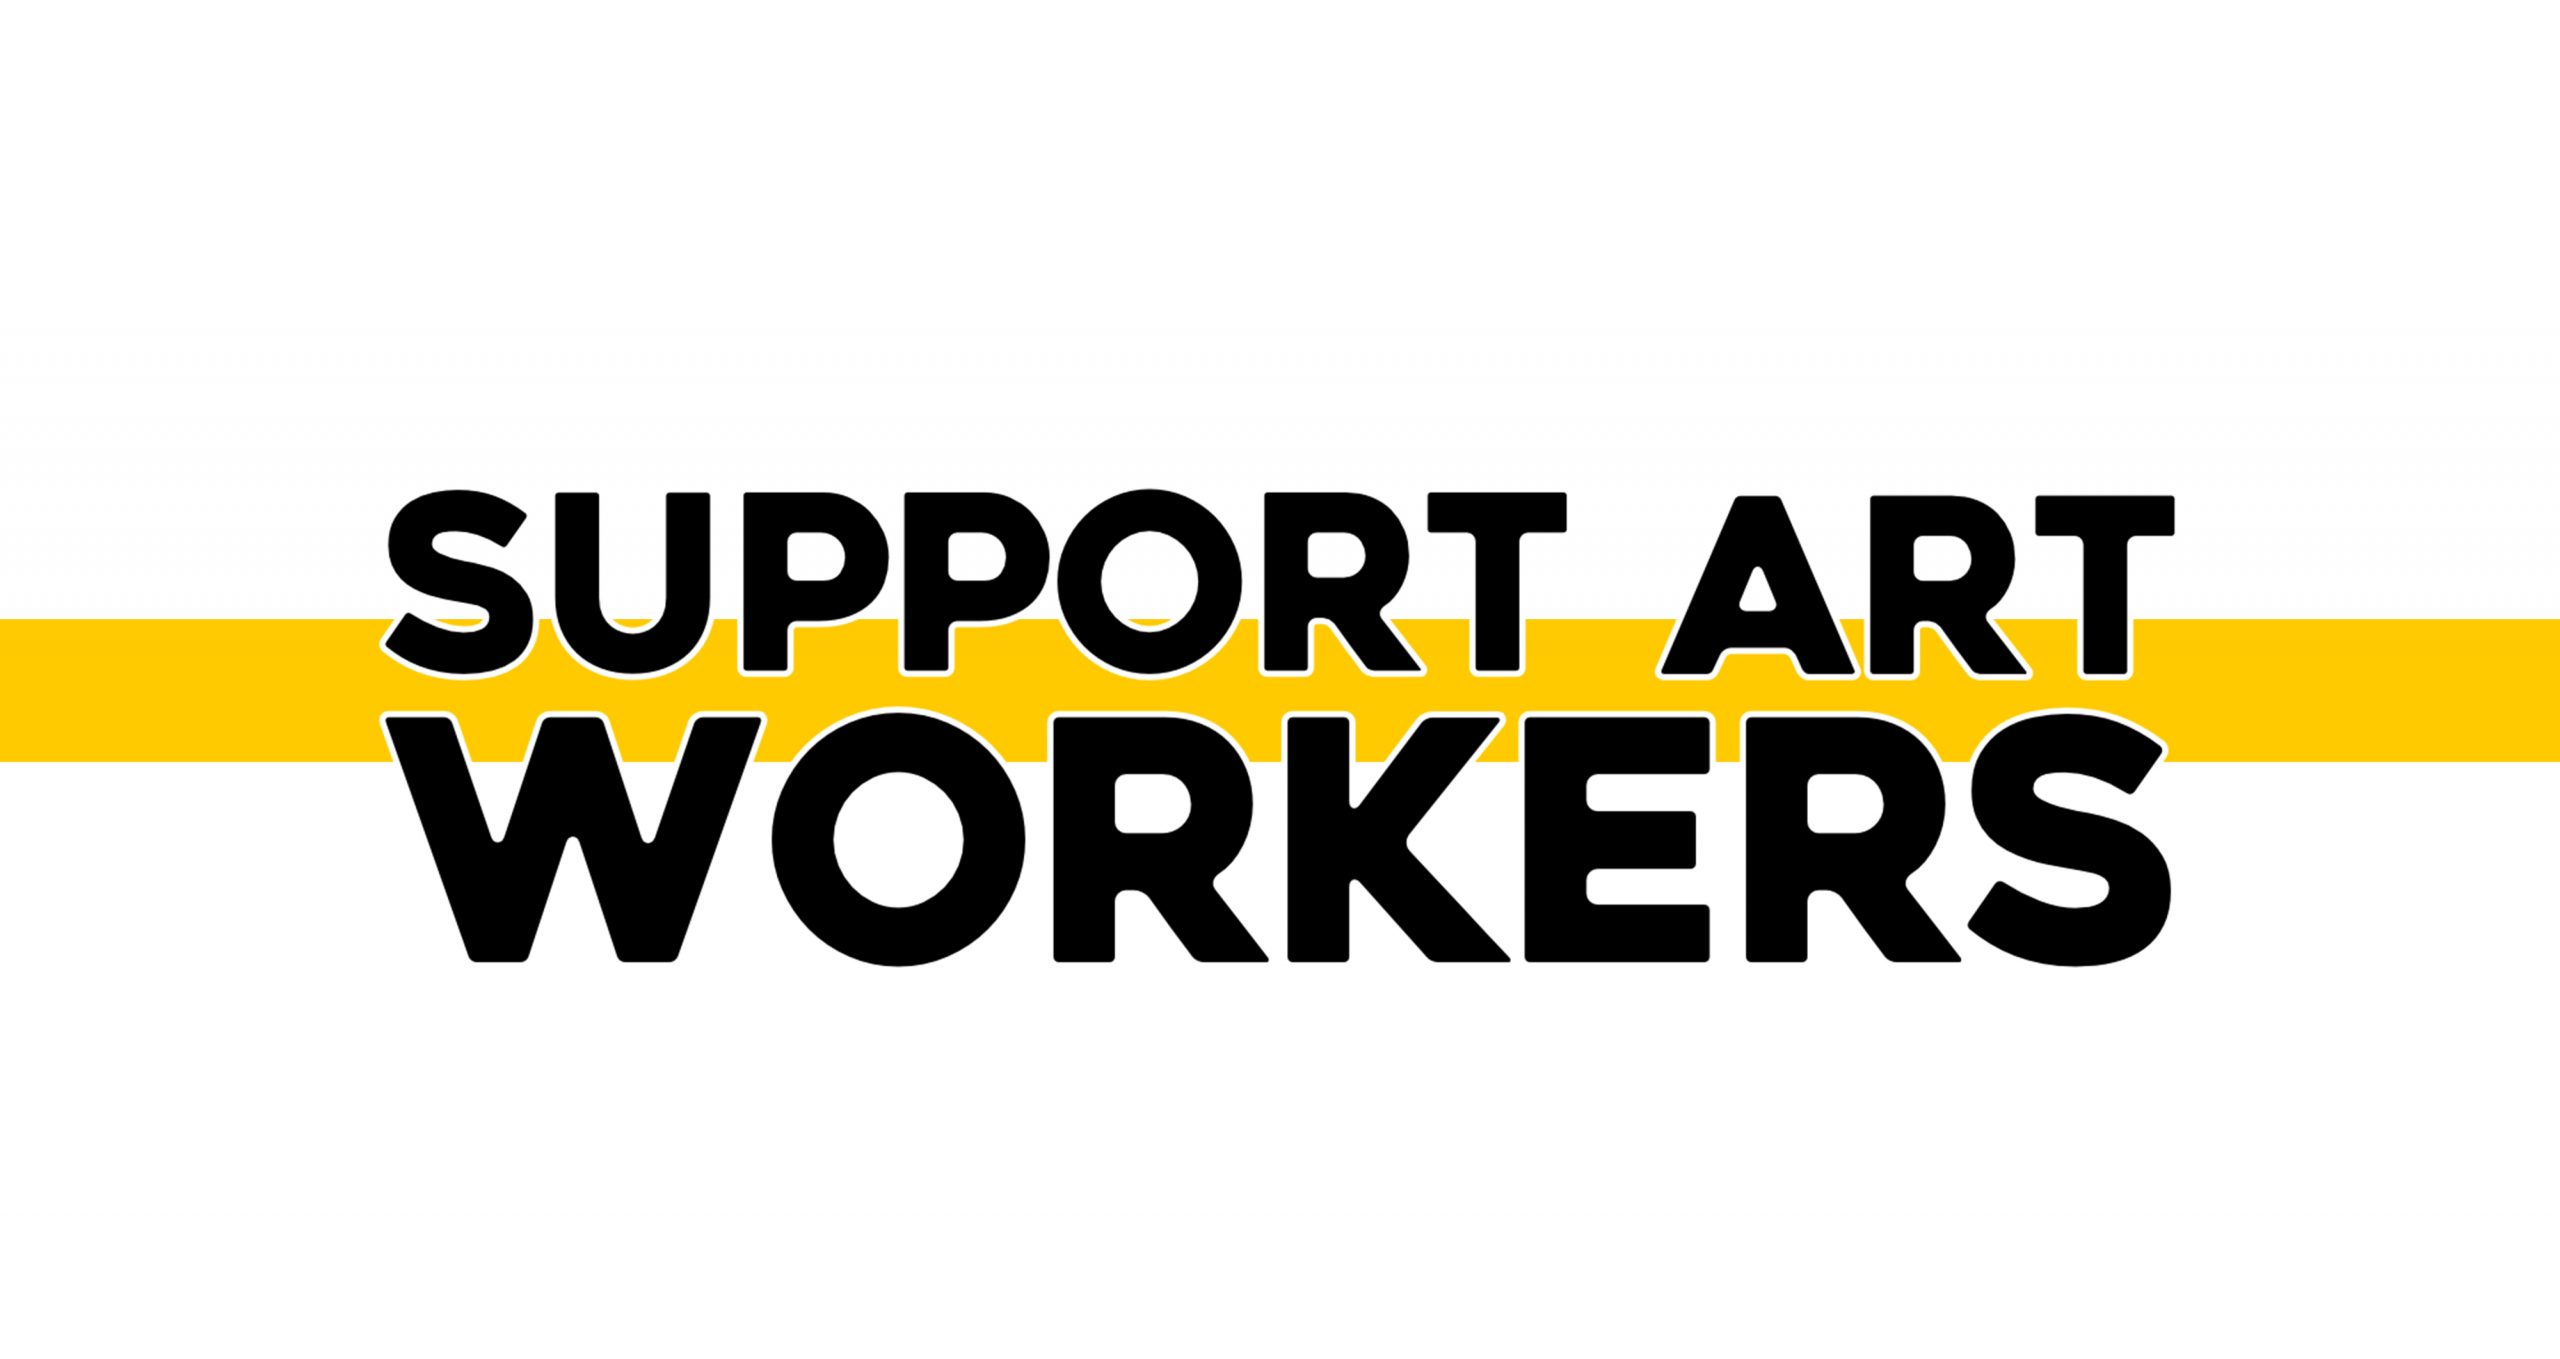 Support Art Workers. Ανακοίνωση σχετικά με το Πρωτόκολλο υγειονομικών μέτρων, το Φεστιβάλ Αθηνών & Επιδαύρου και το Μητρώο Καλλιτεχνών και Δημιουργών